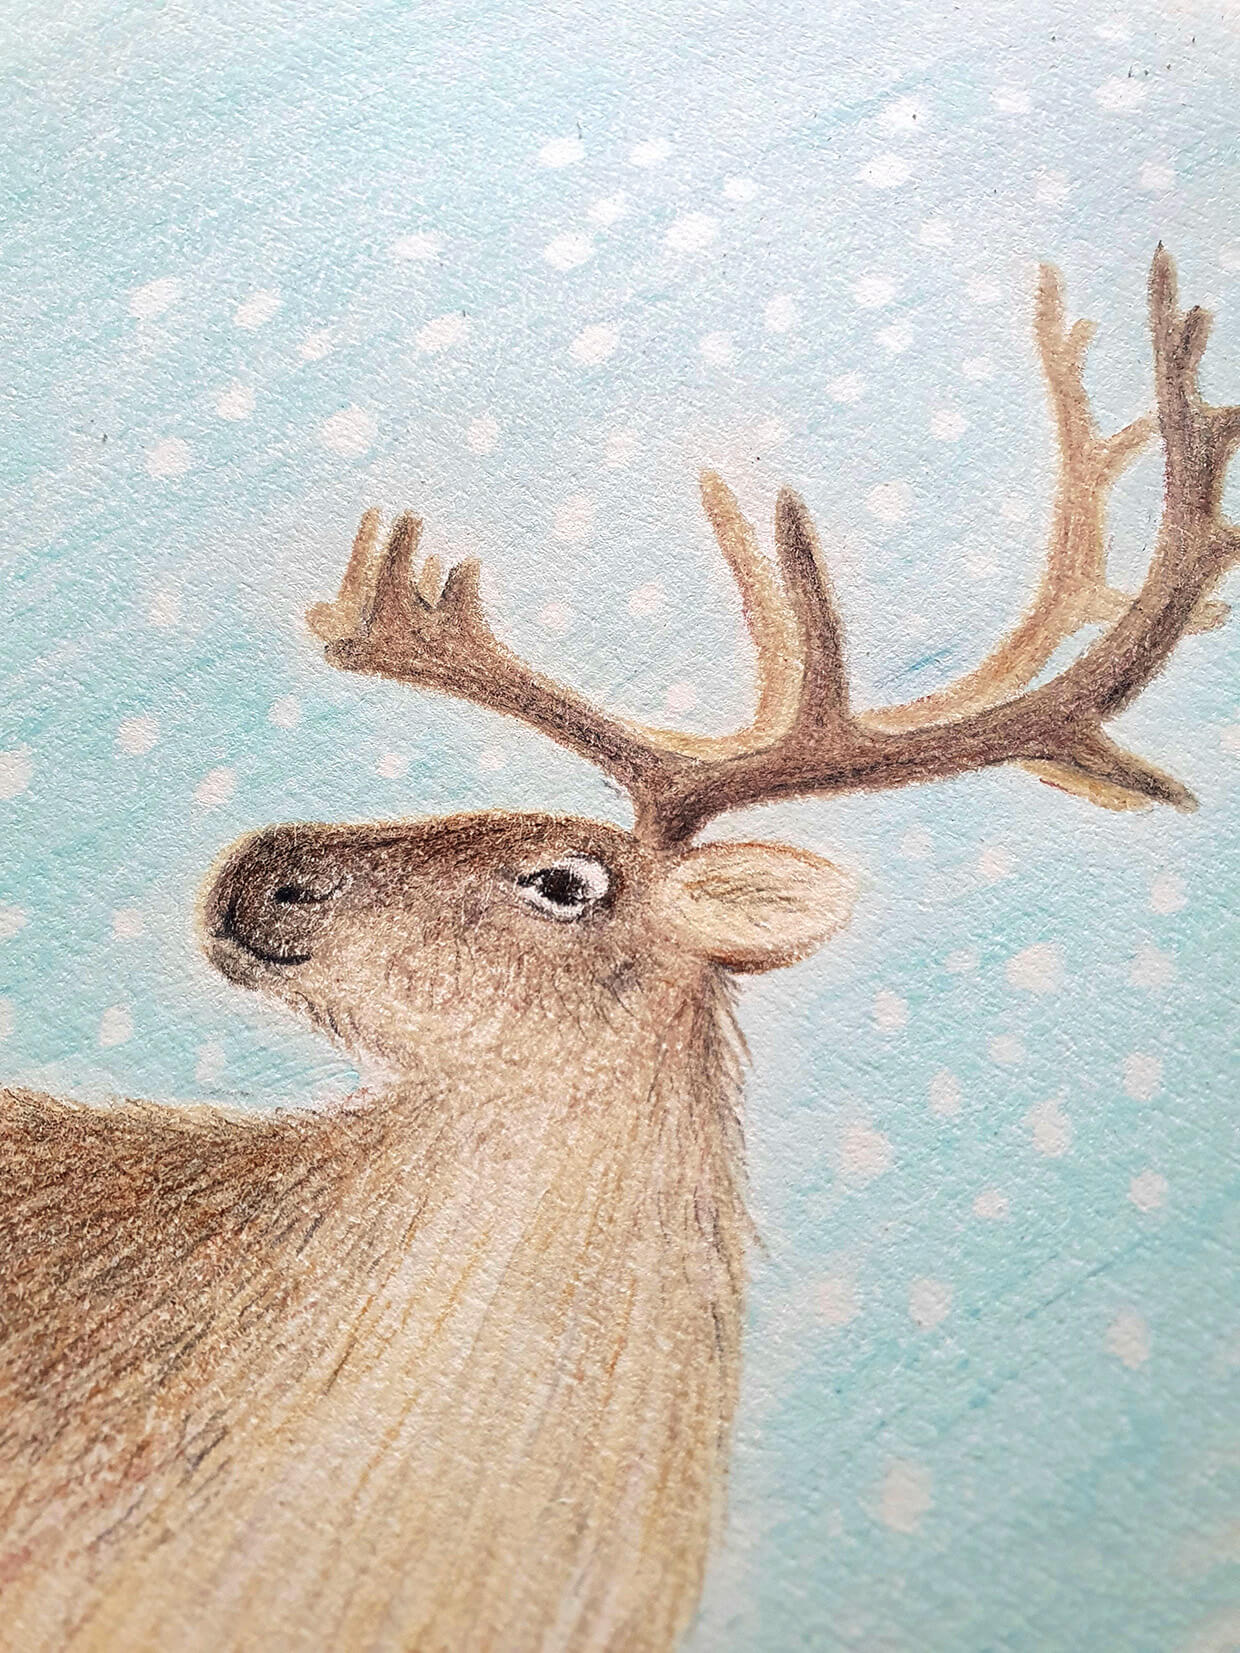 Reindeer Coloring Pages - Superstar Worksheets